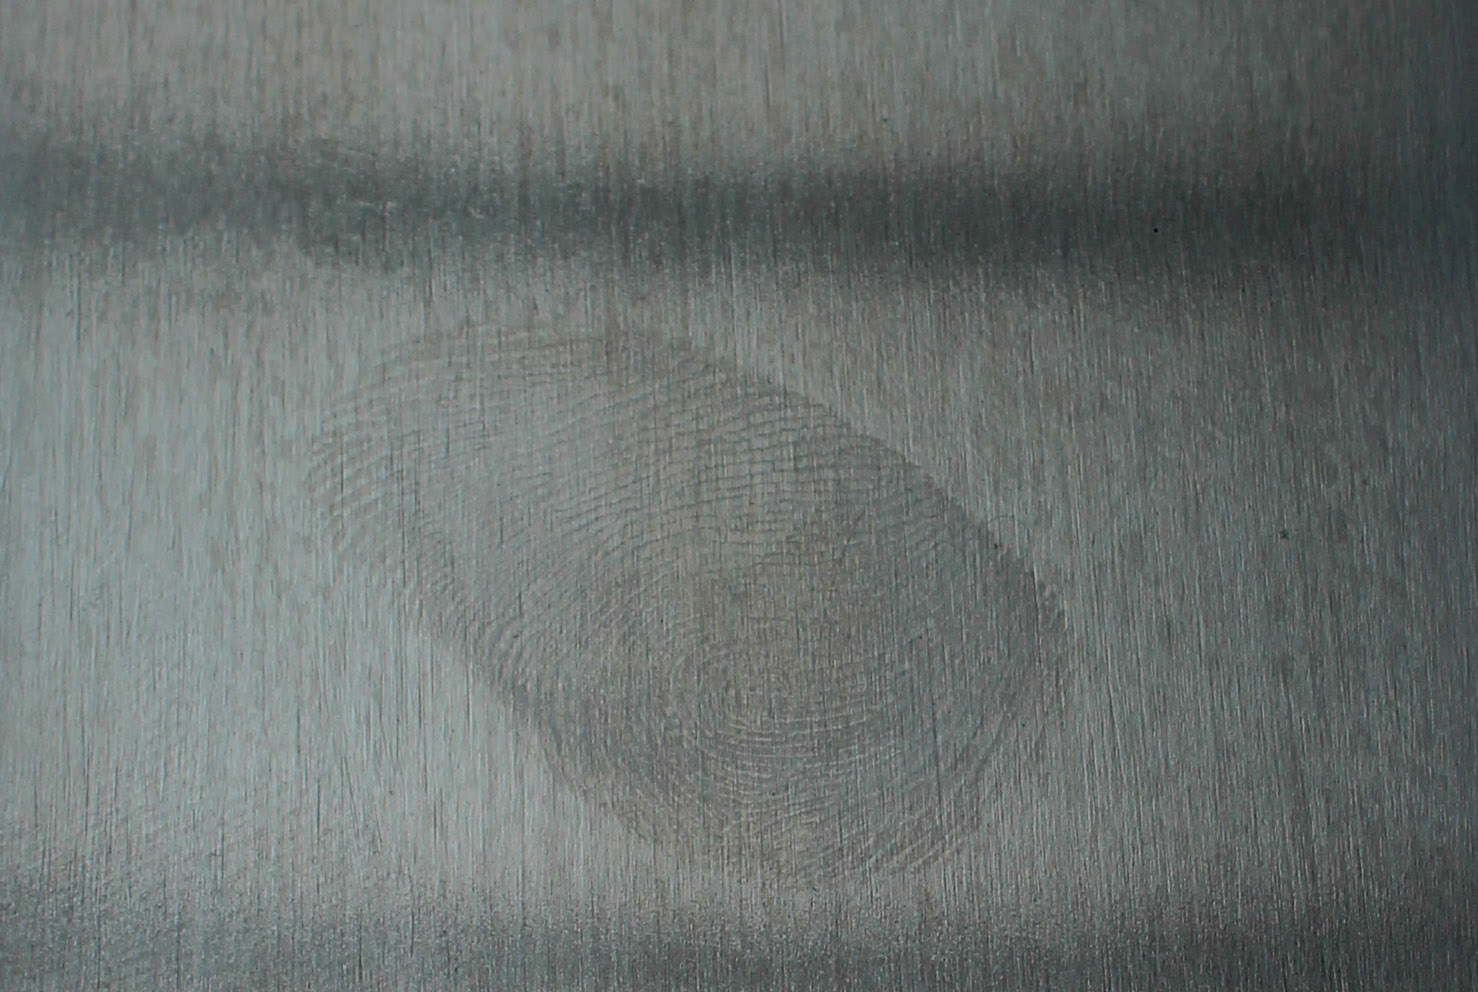 Fingerabdrücke auf Edelstahl- und Metalloberflächen sollen sich mit dem neuen Sol/Gel-Nanolack vermeiden lassen.